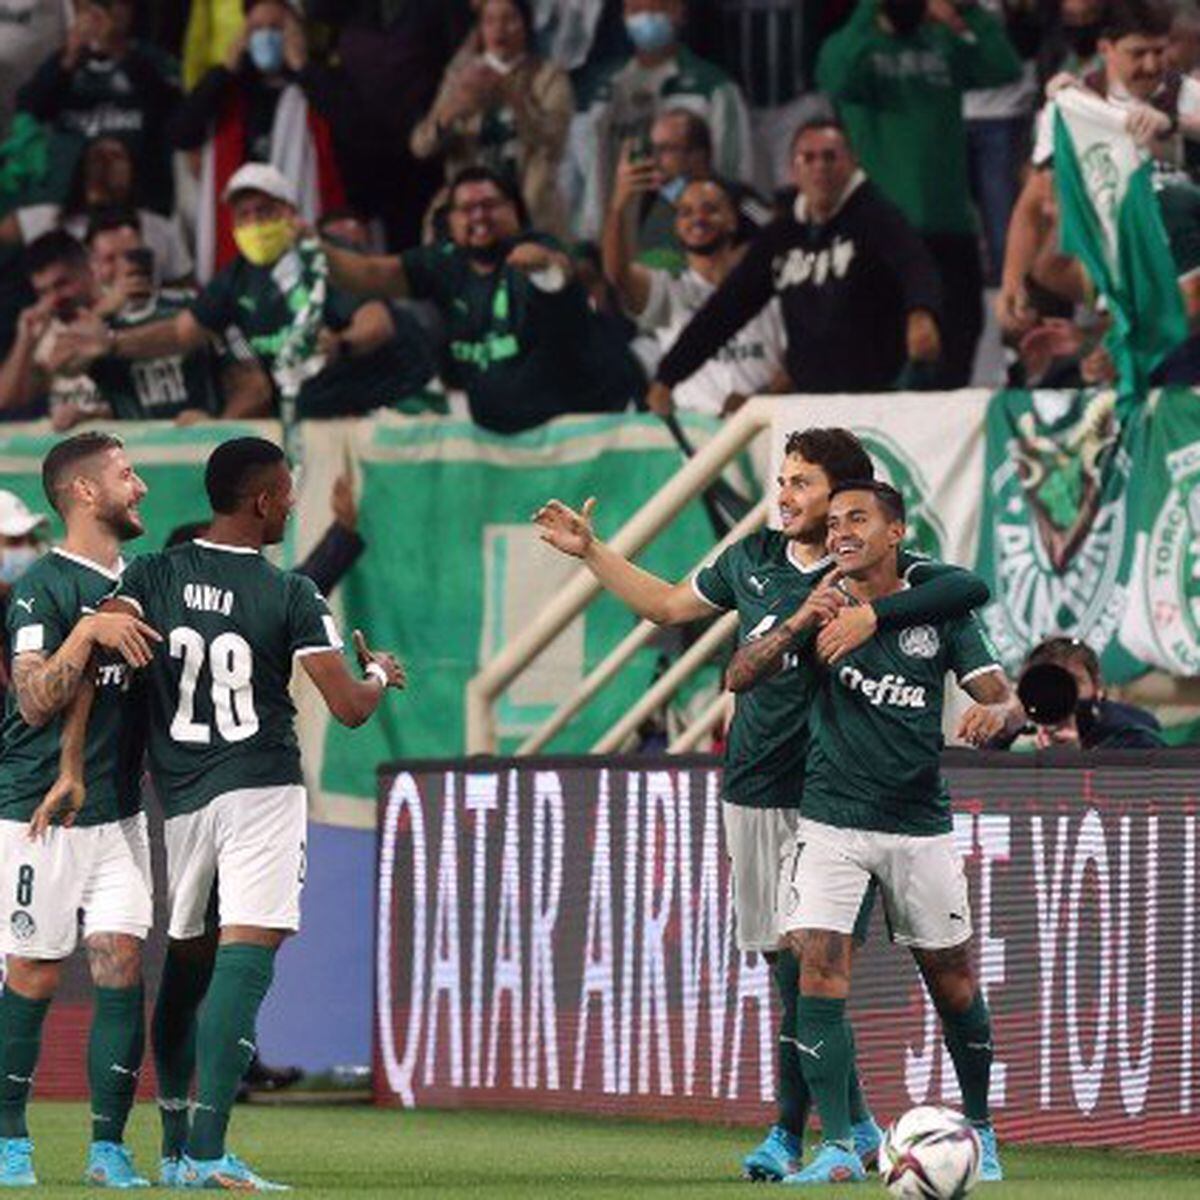 Palmeiras vence Al Ahly por 2x0 e está na final do Mundial de Clubes